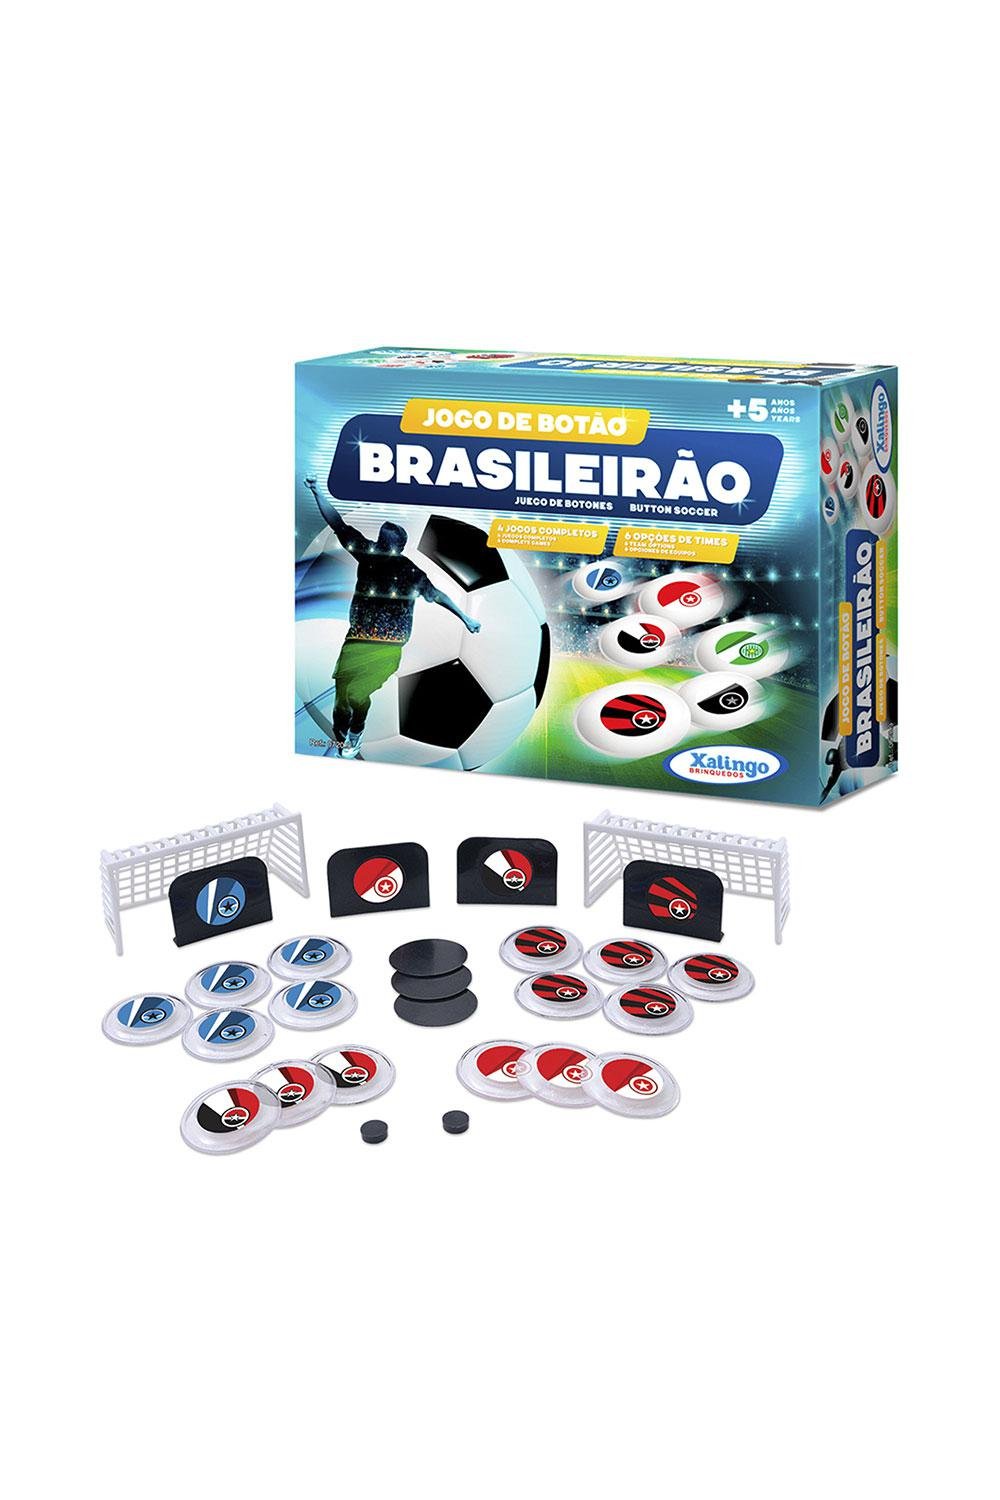 Jogo de Botão Brasileirão Xalingo - RioMar Recife Online